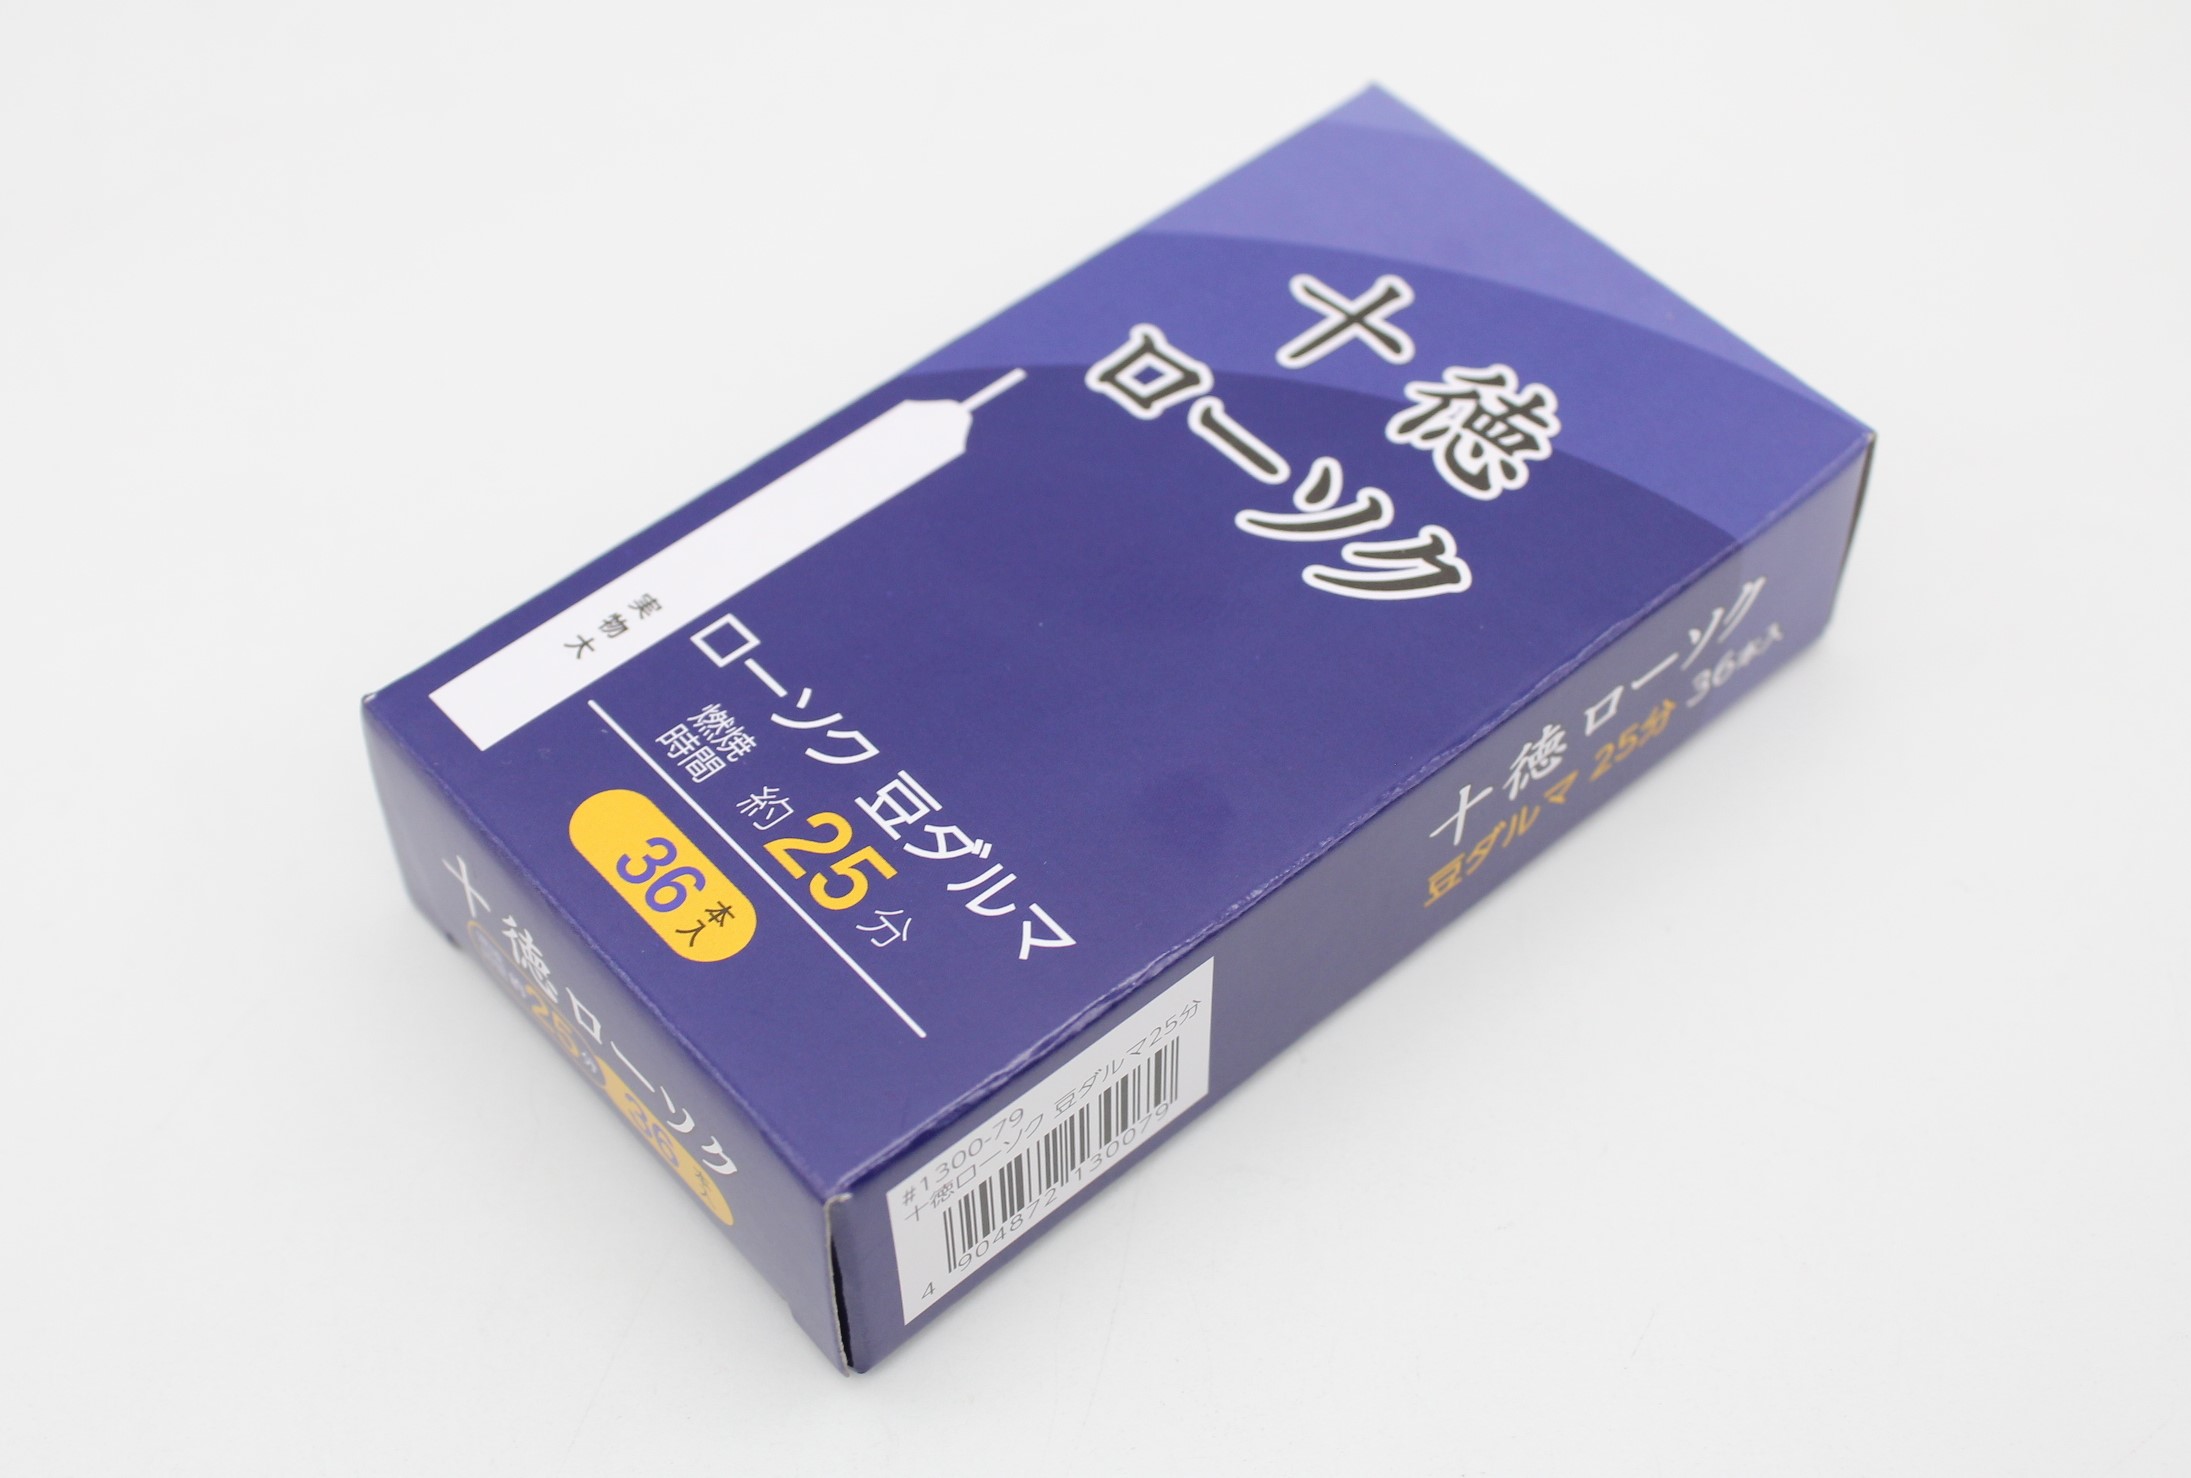 十徳ローソク　豆ダルマ36本入（25分）